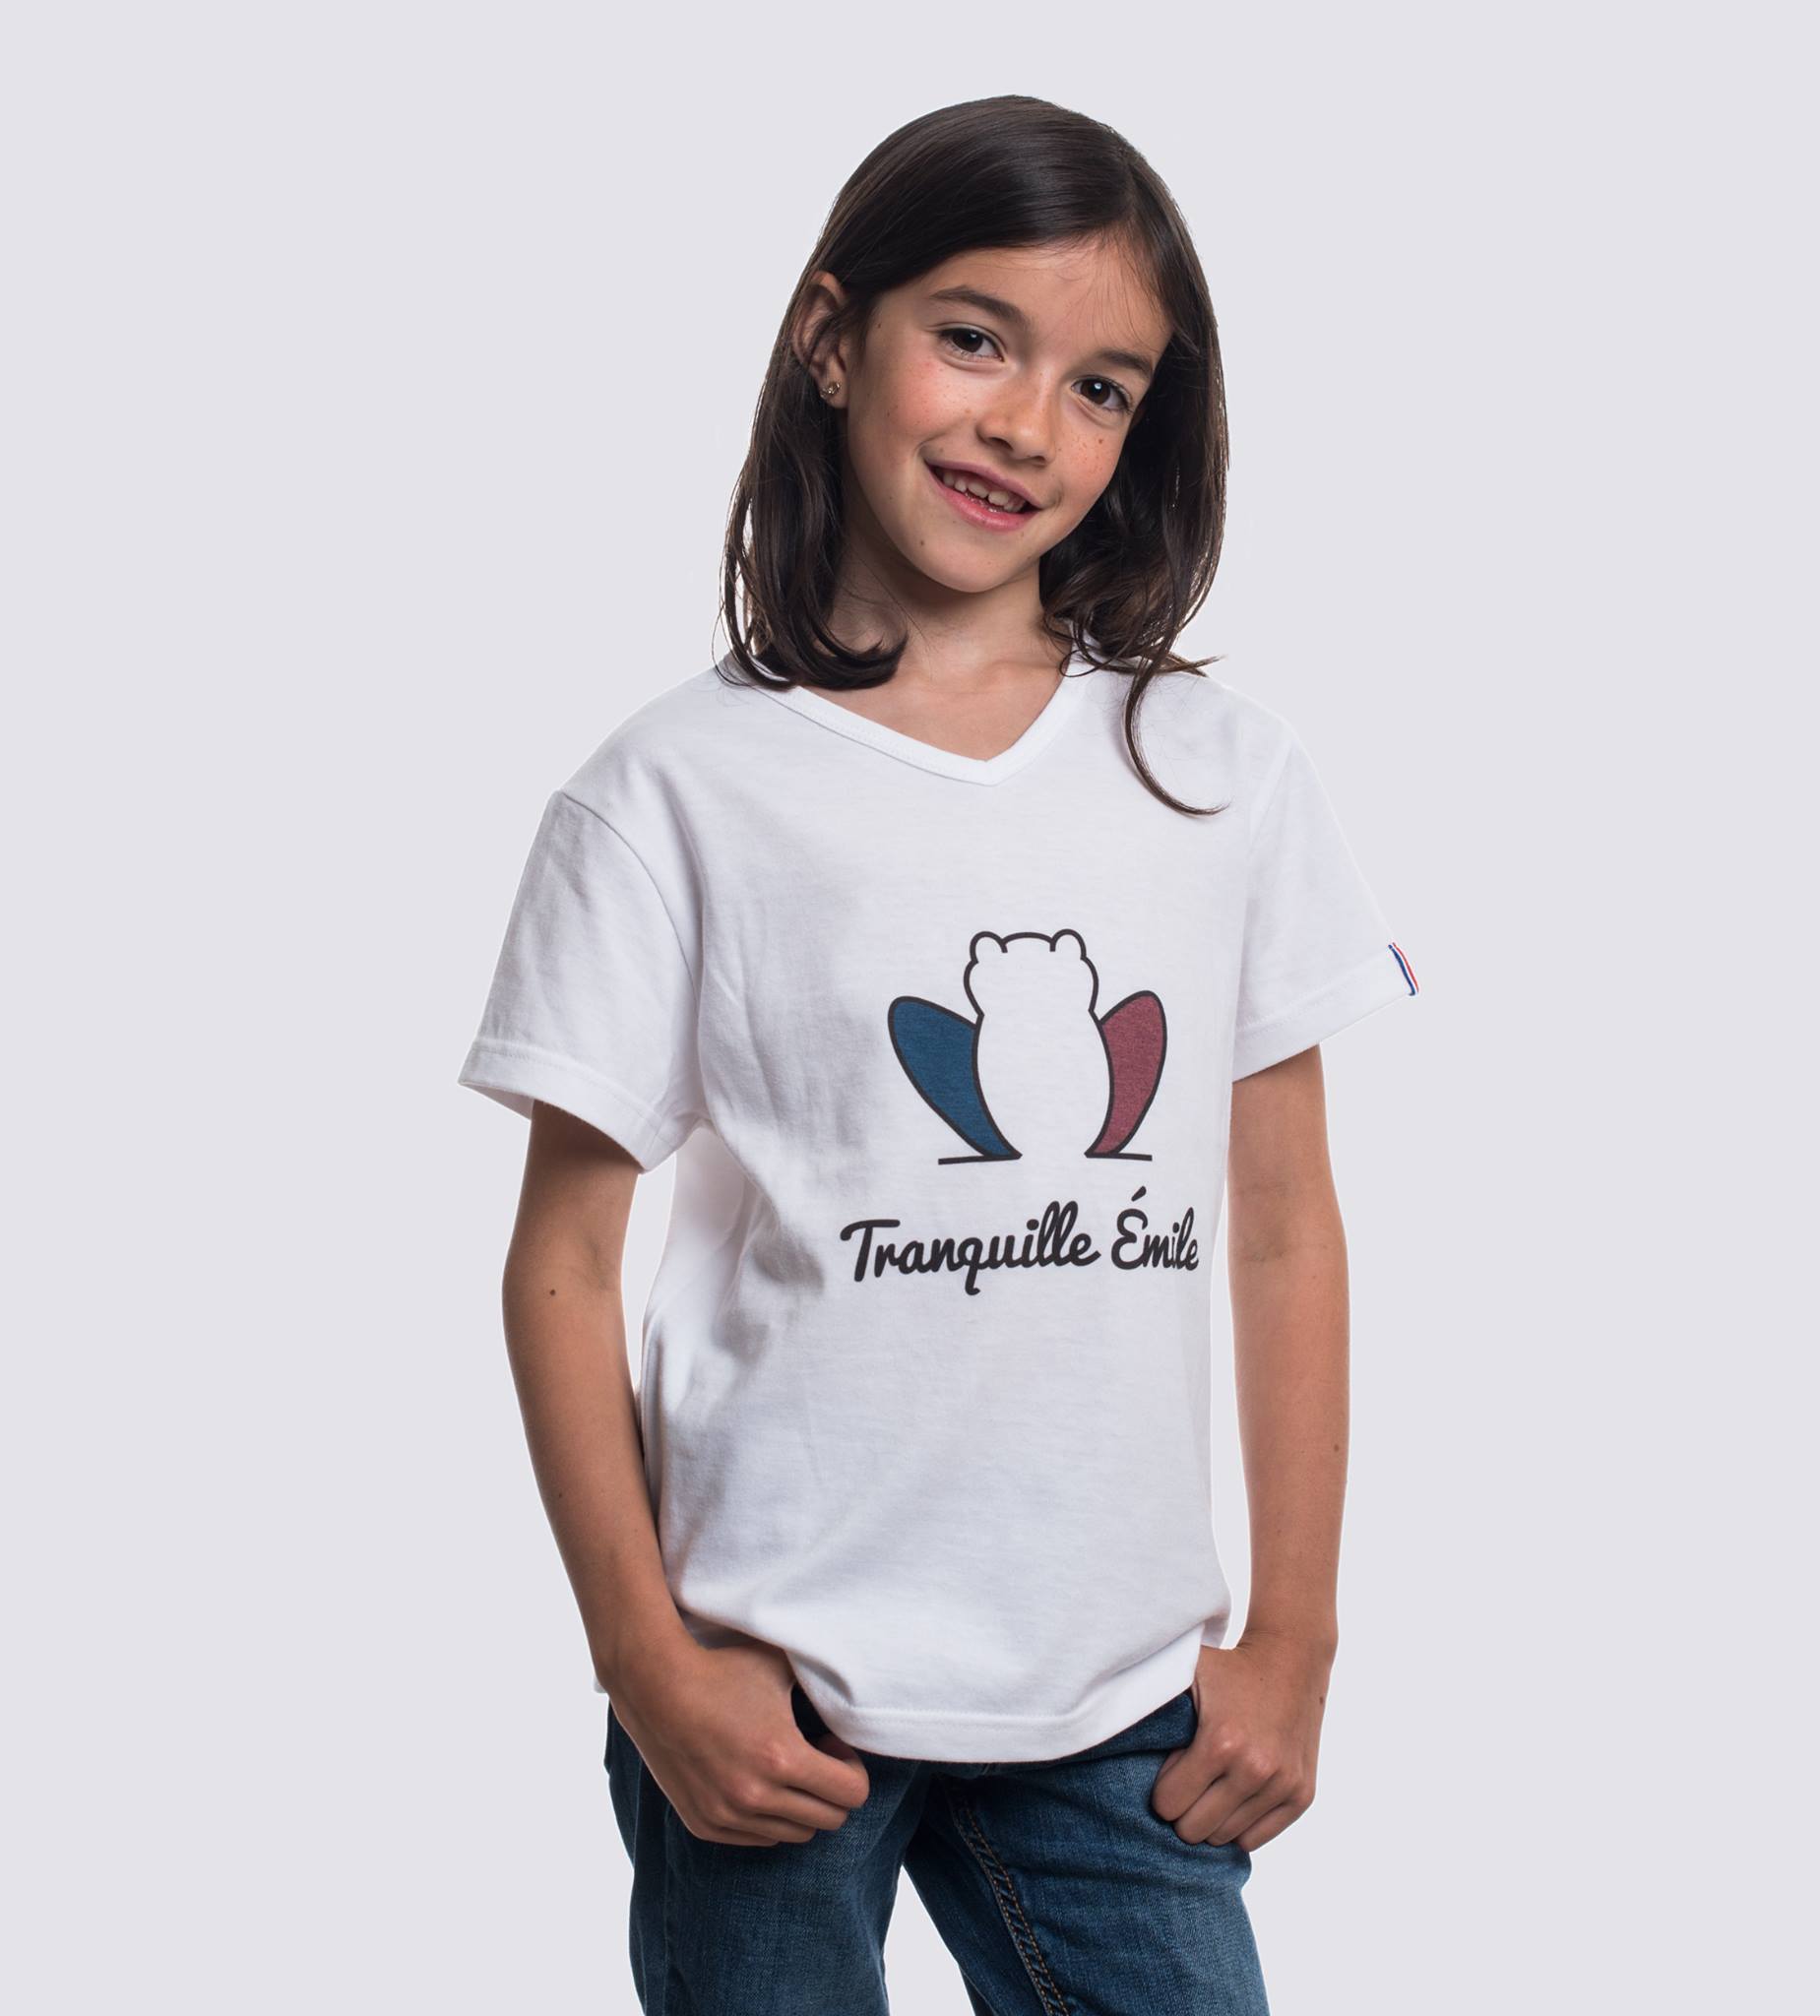 t-shirt-enfant-made-in-france